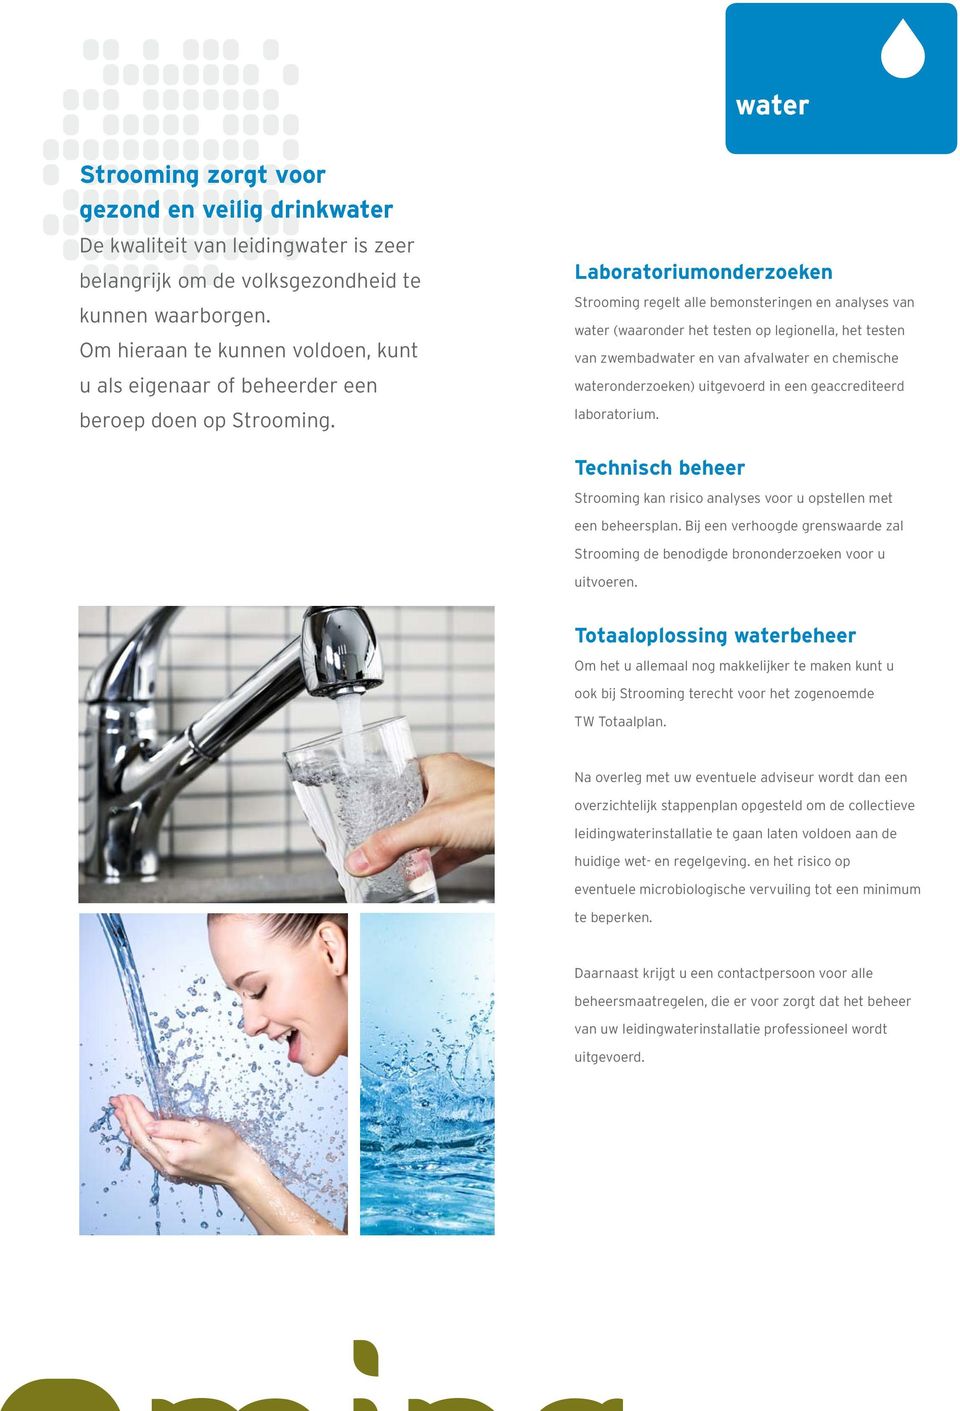 Laboratoriumonderzoeken Strooming regelt alle bemonsteringen en analyses van water (waaronder het testen op legionella, het testen van zwembadwater en van afvalwater en chemische wateronderzoeken)